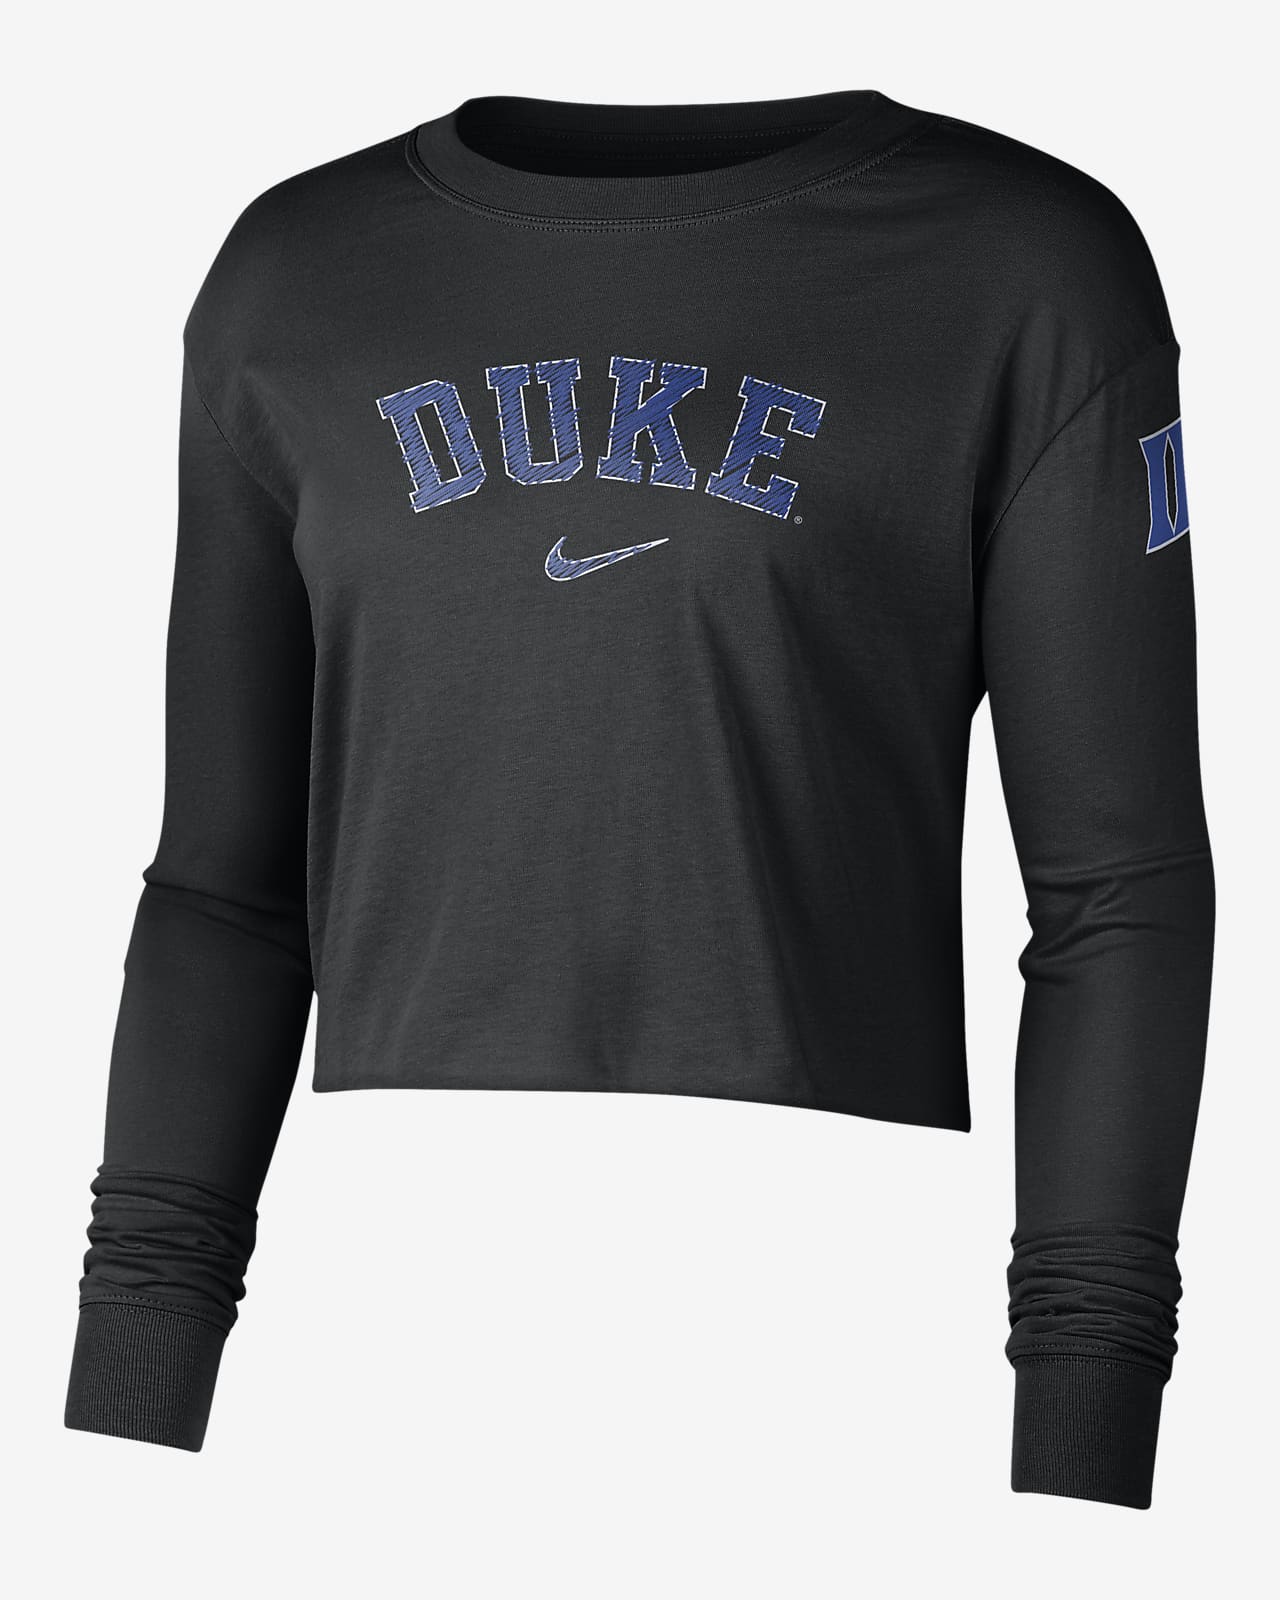 Nike (Duke) Women's Cropped Long-Sleeve T-Shirt. Nike.com